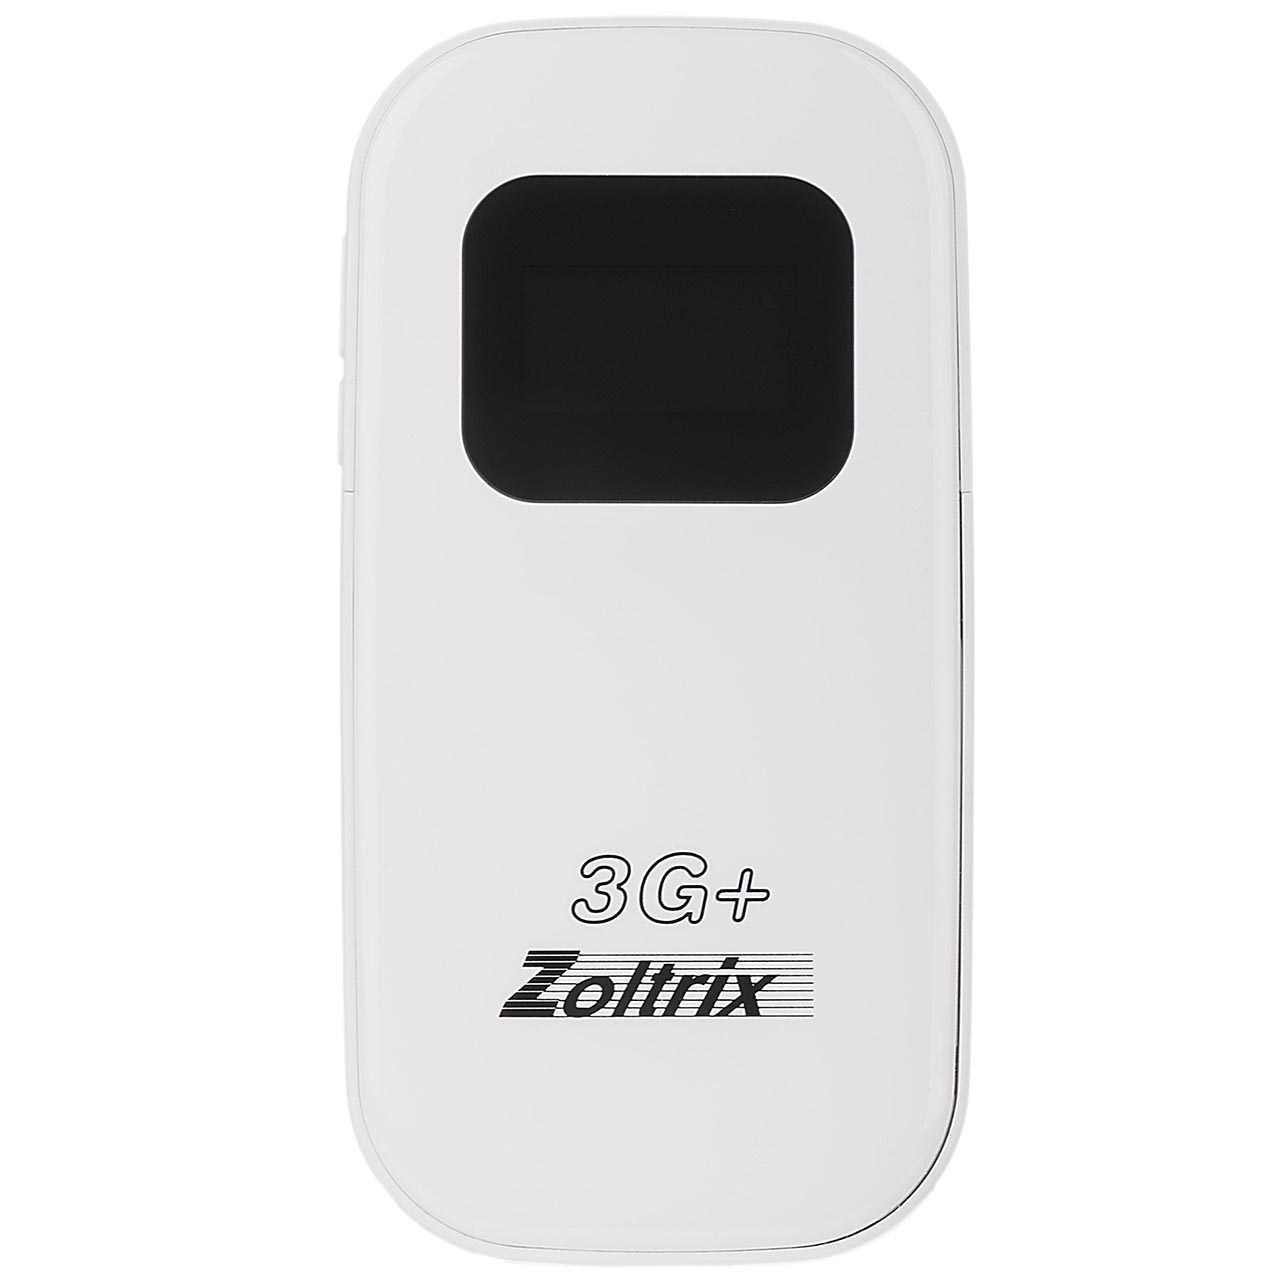 مودم همراه بی سیم 3G زولتریکس مدل ZR19-3G